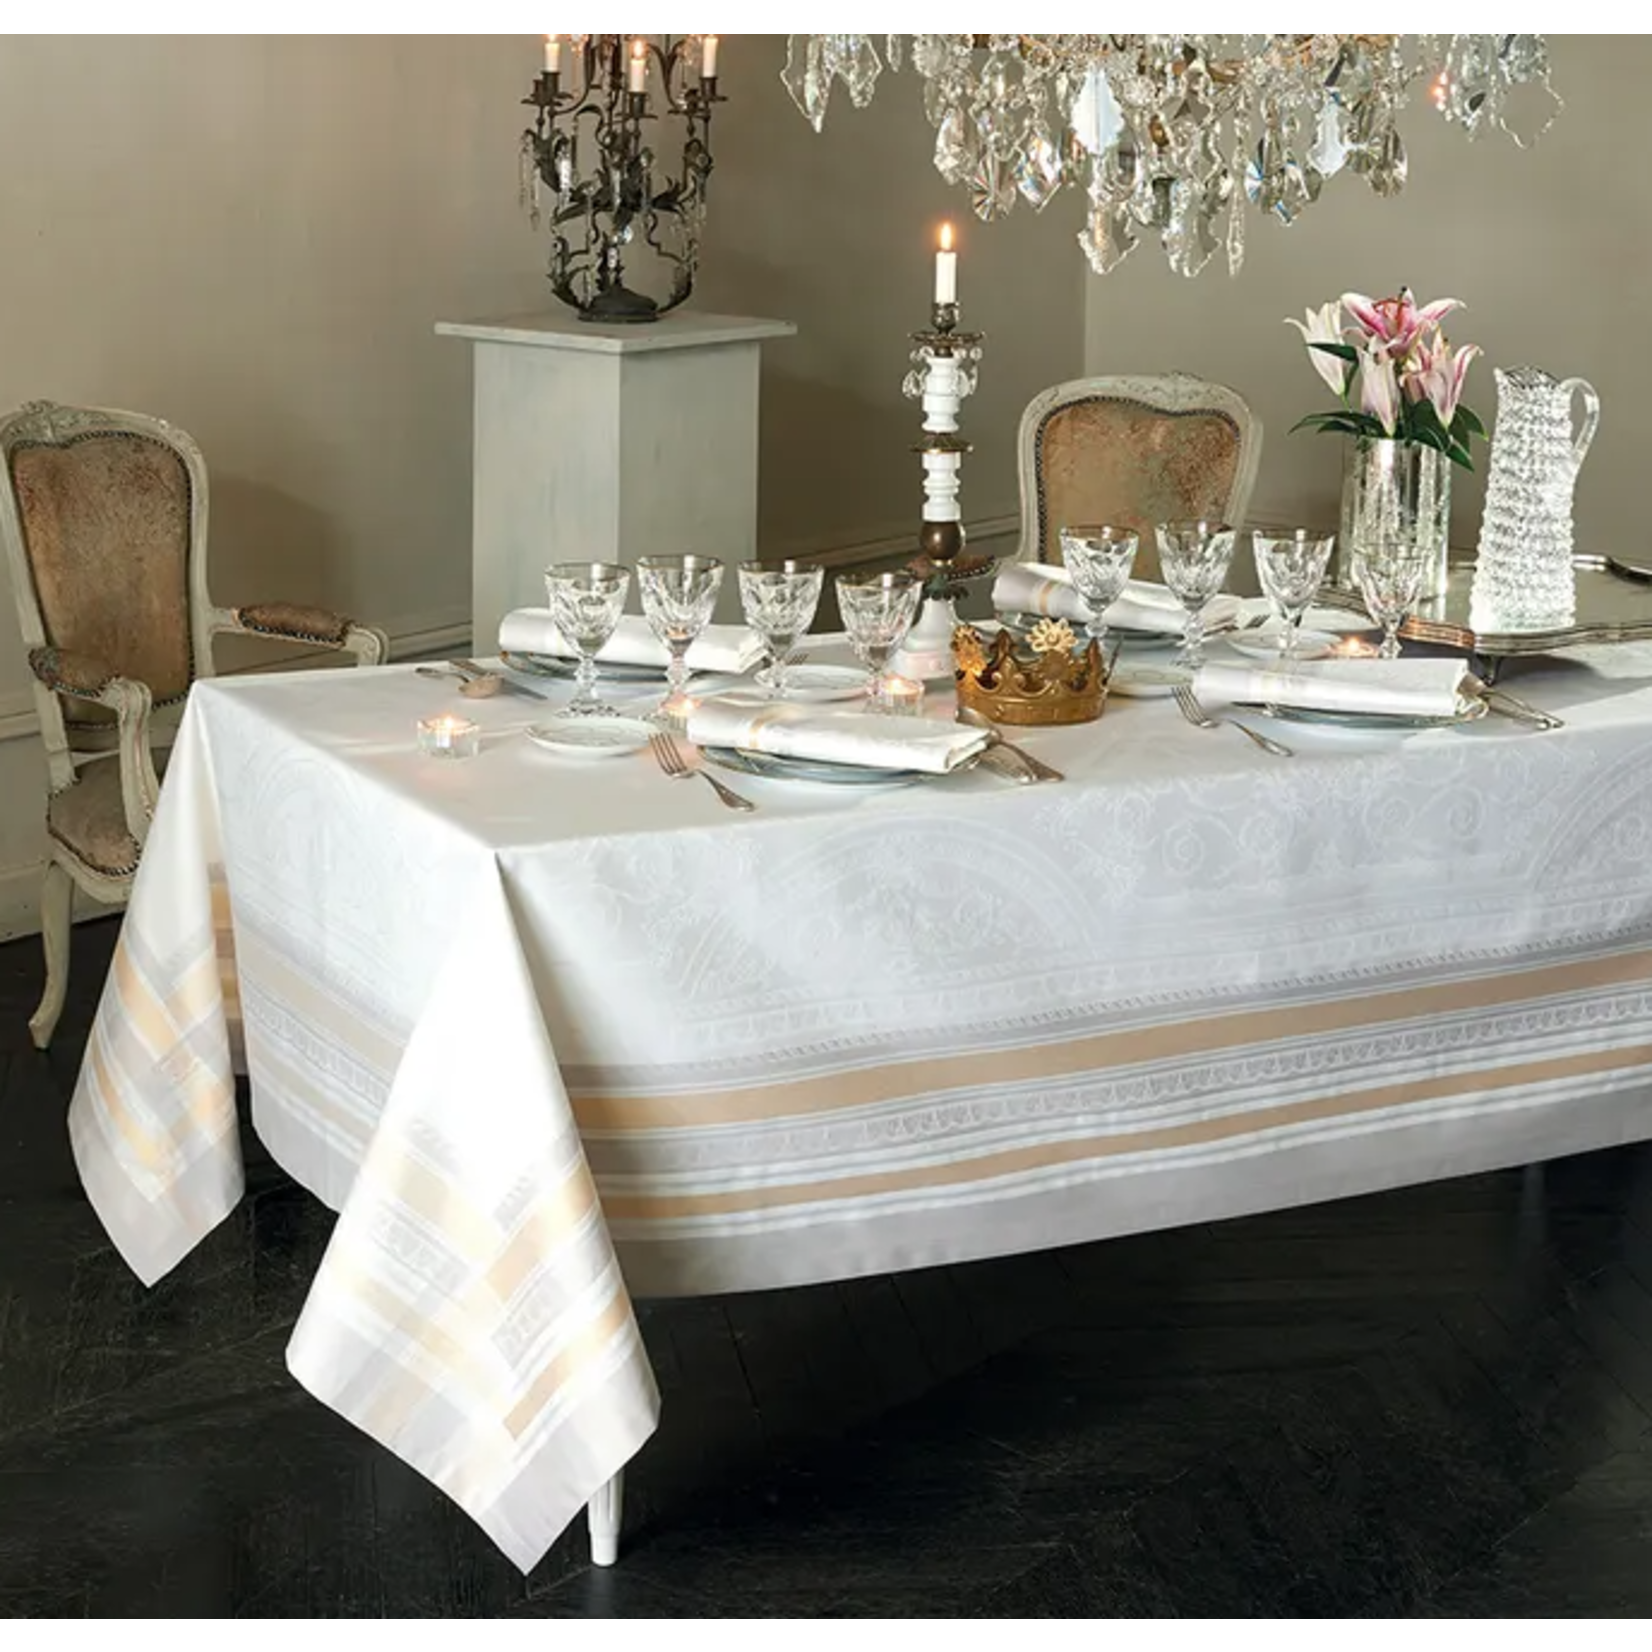 Garnier Thiebaut Galerie Des Glaces Vermeil Jacquard Tablecloth